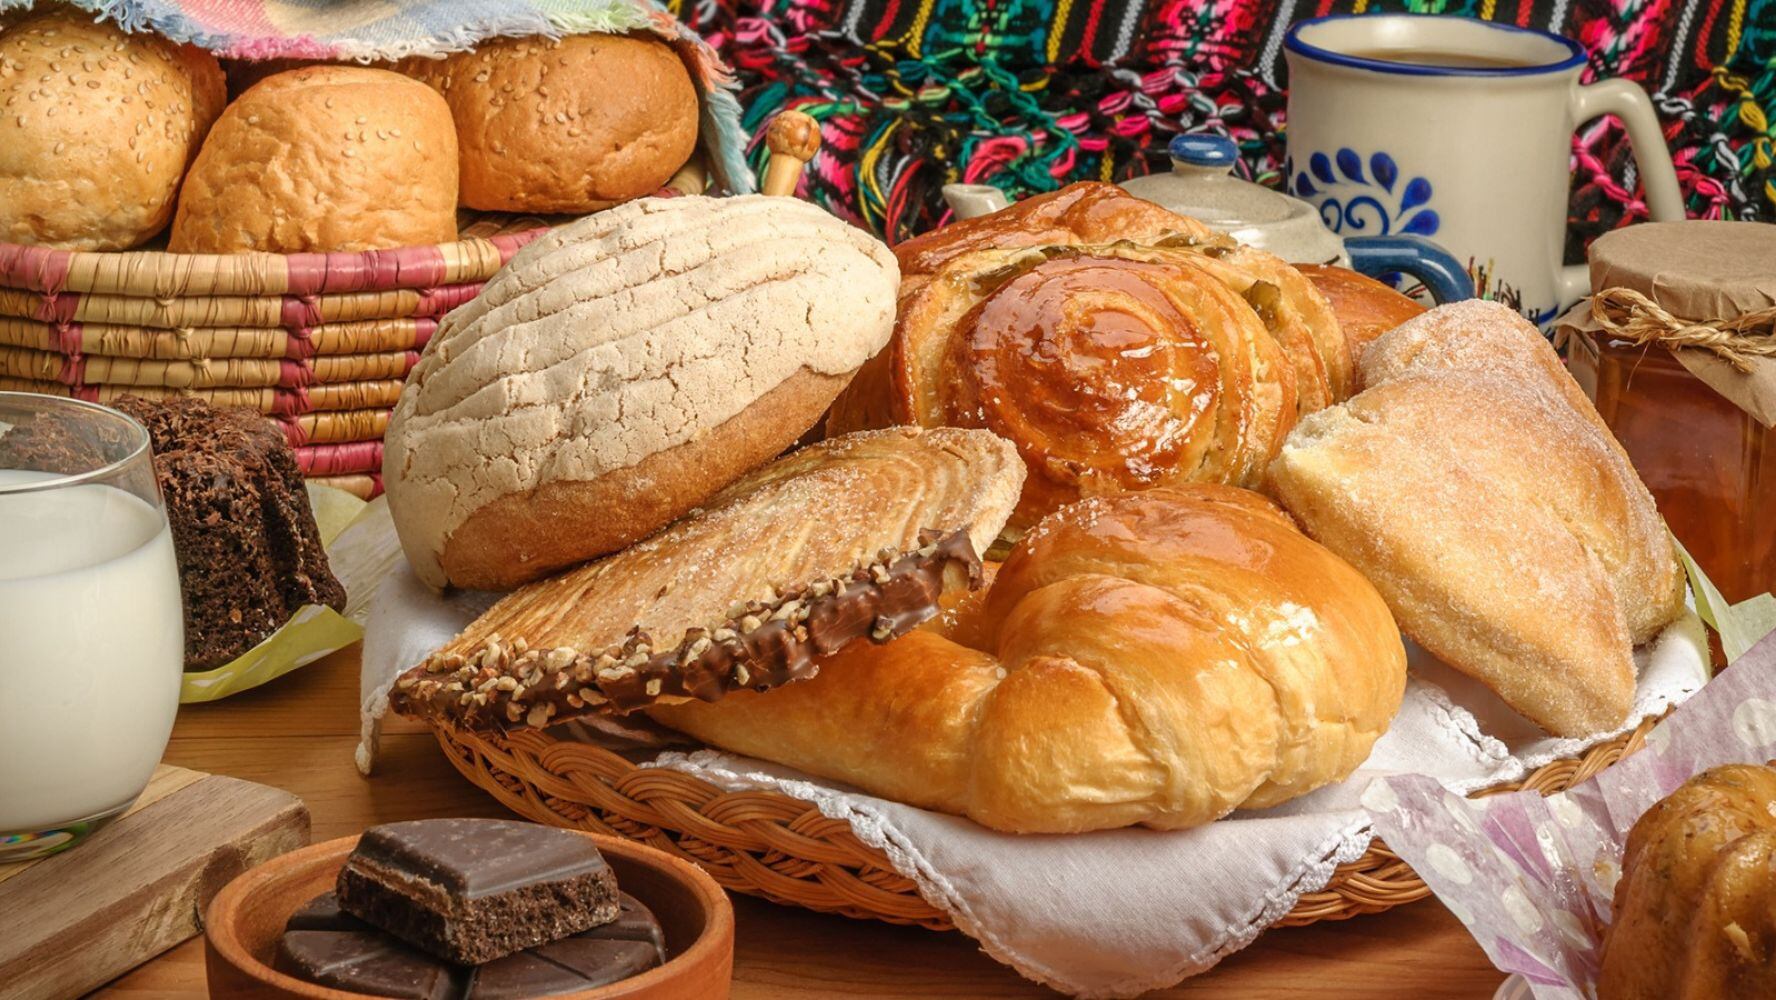 El pan dulce en exceso puede tener repercusiones para la salud. (Foto: Shutterstock)